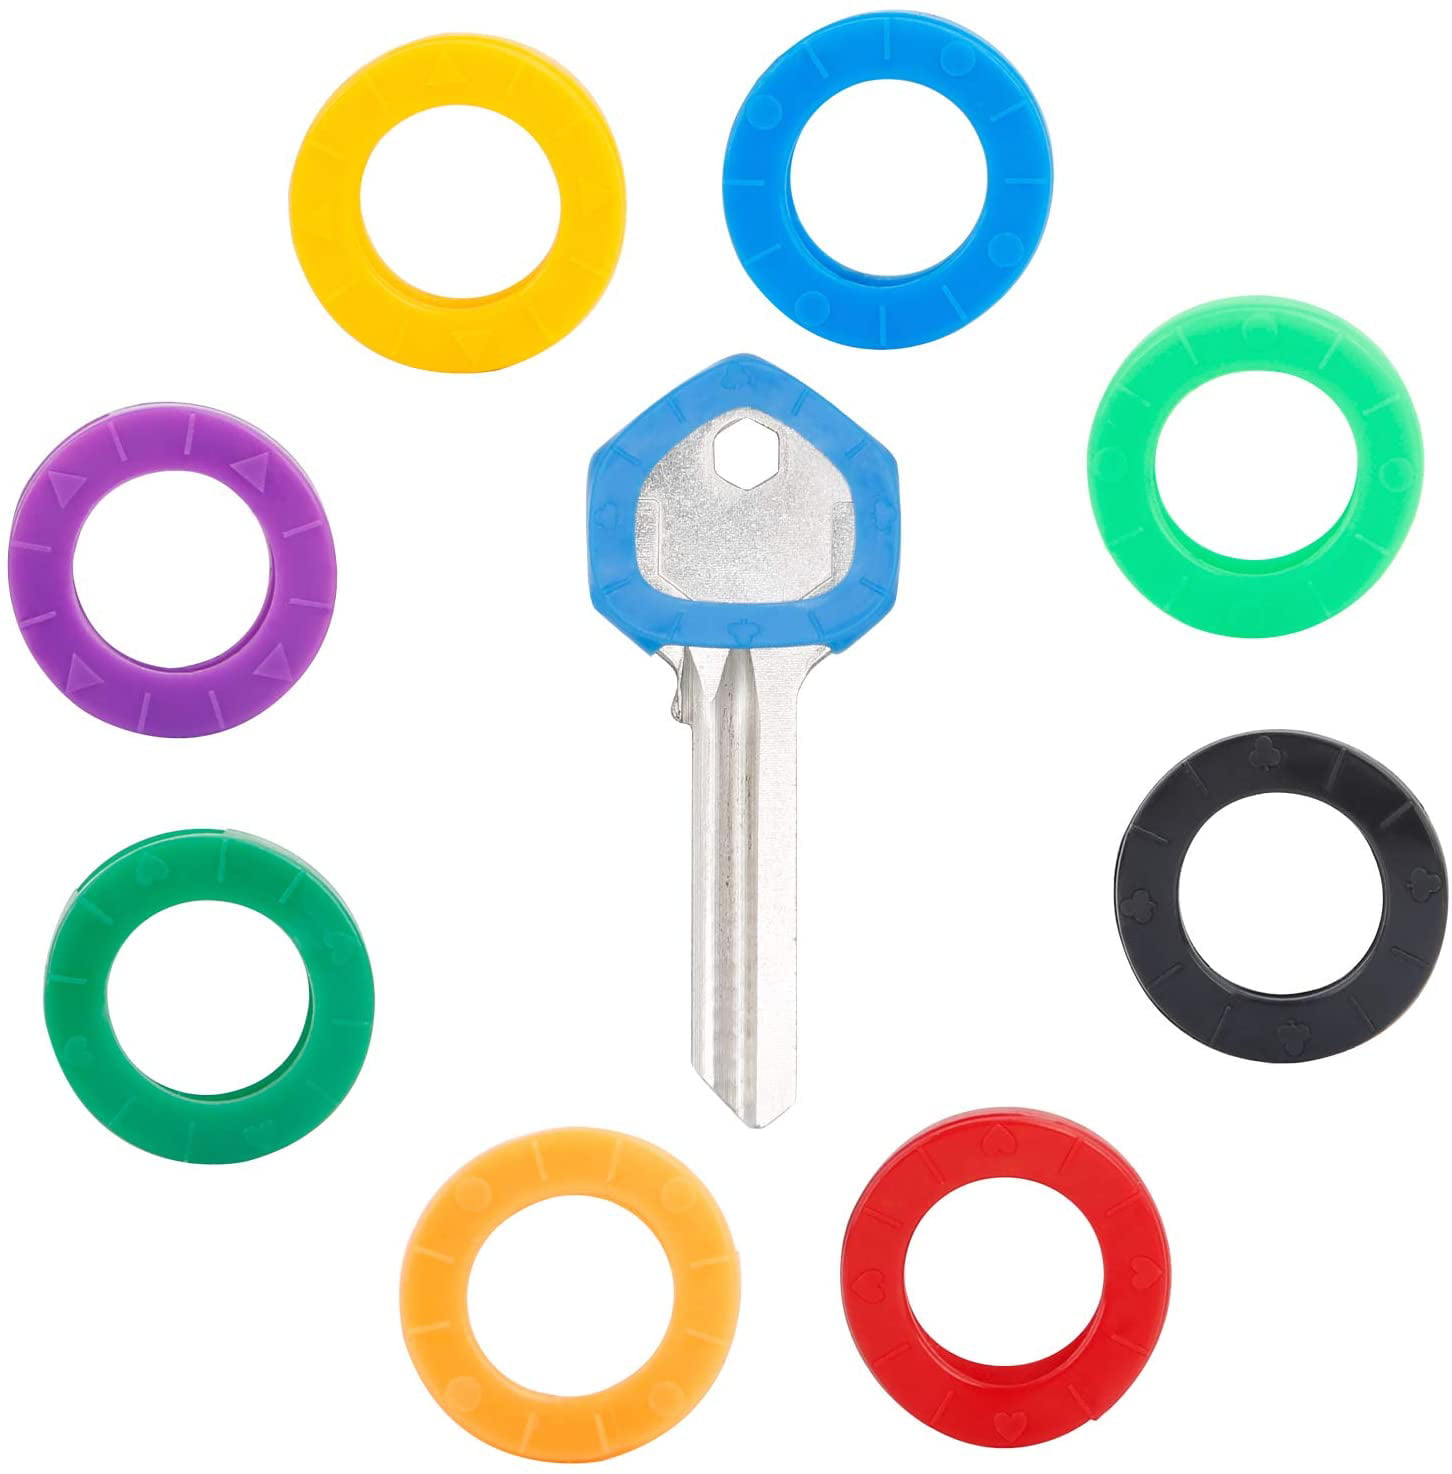 10pcs/20pcs Mixed Color Soft Key Top Cover Caps Case Keyring ID Marker VG 